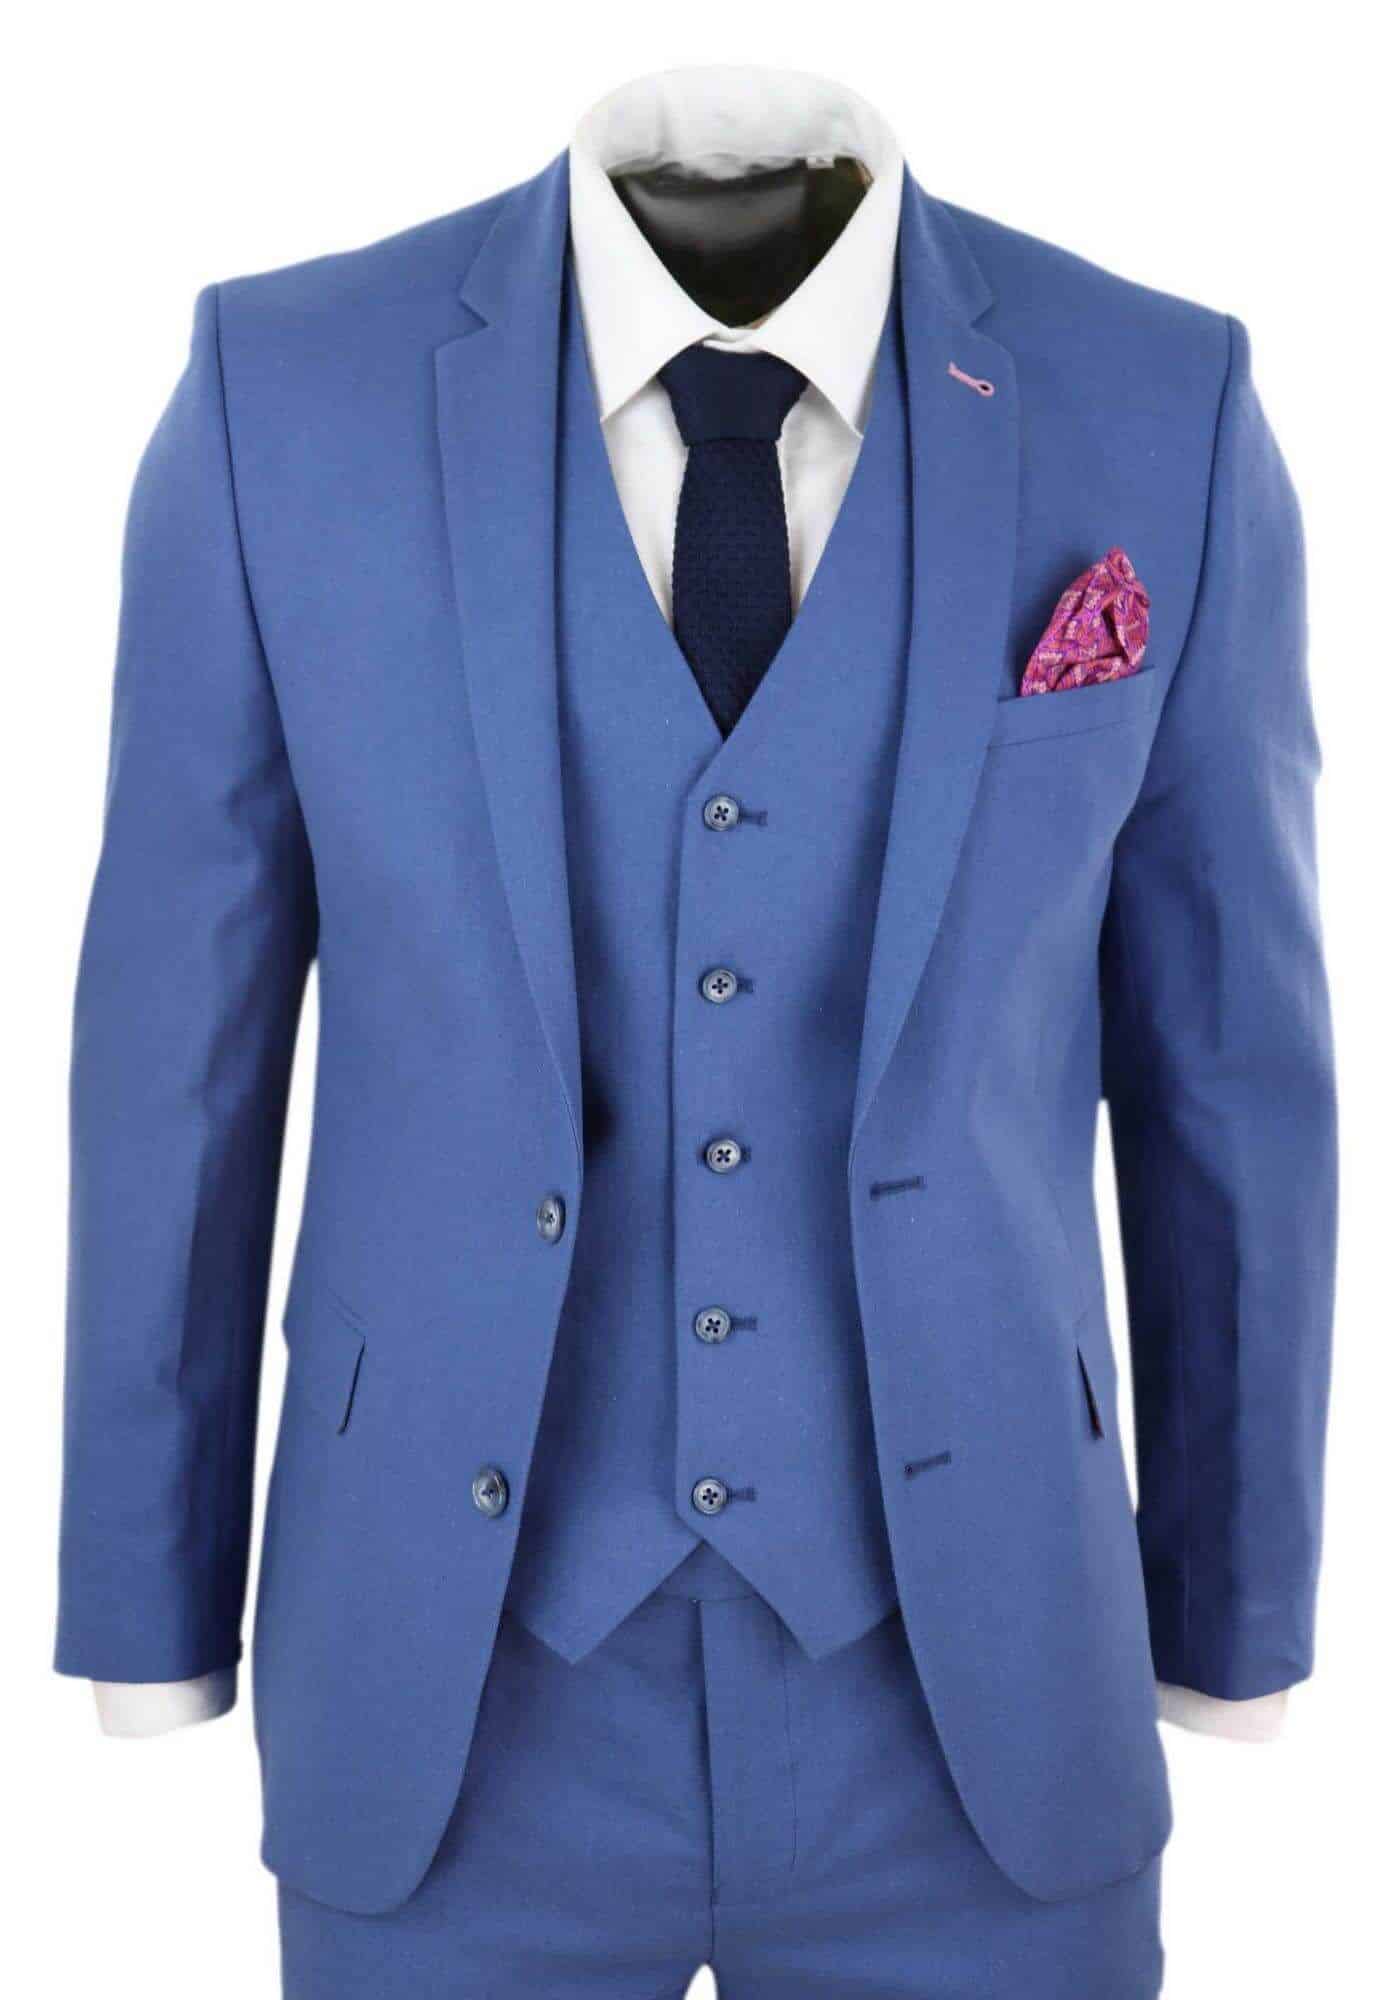 Mens Blue Light Summer Suit: Buy Online - Happy Gentleman